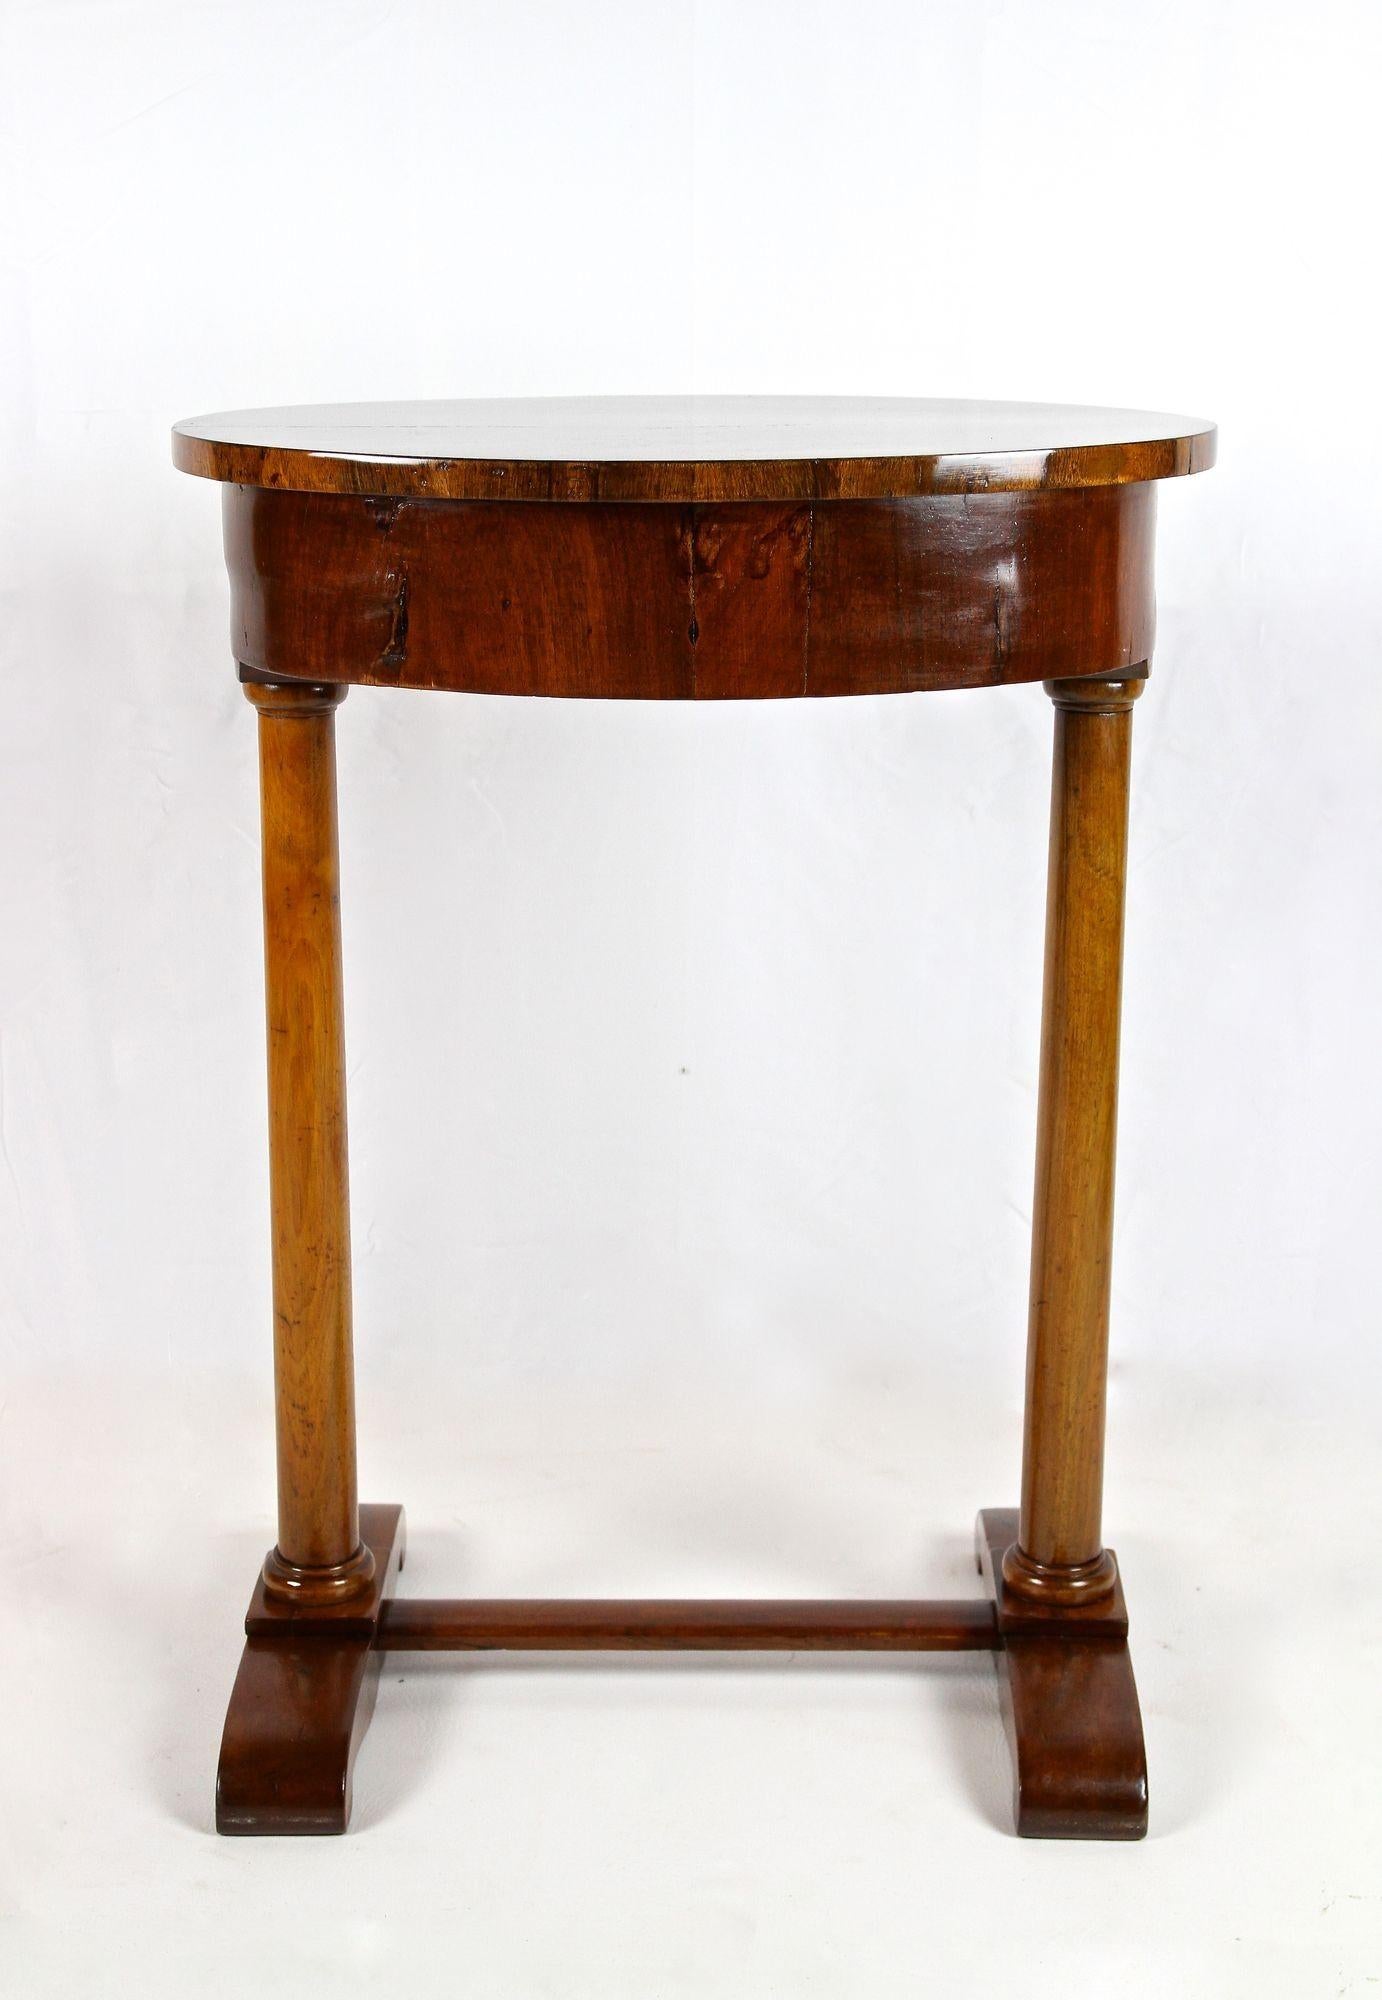 Oval 19th Century Biedermeier Nutwood Side Table, Austria, circa 1830 For Sale 4